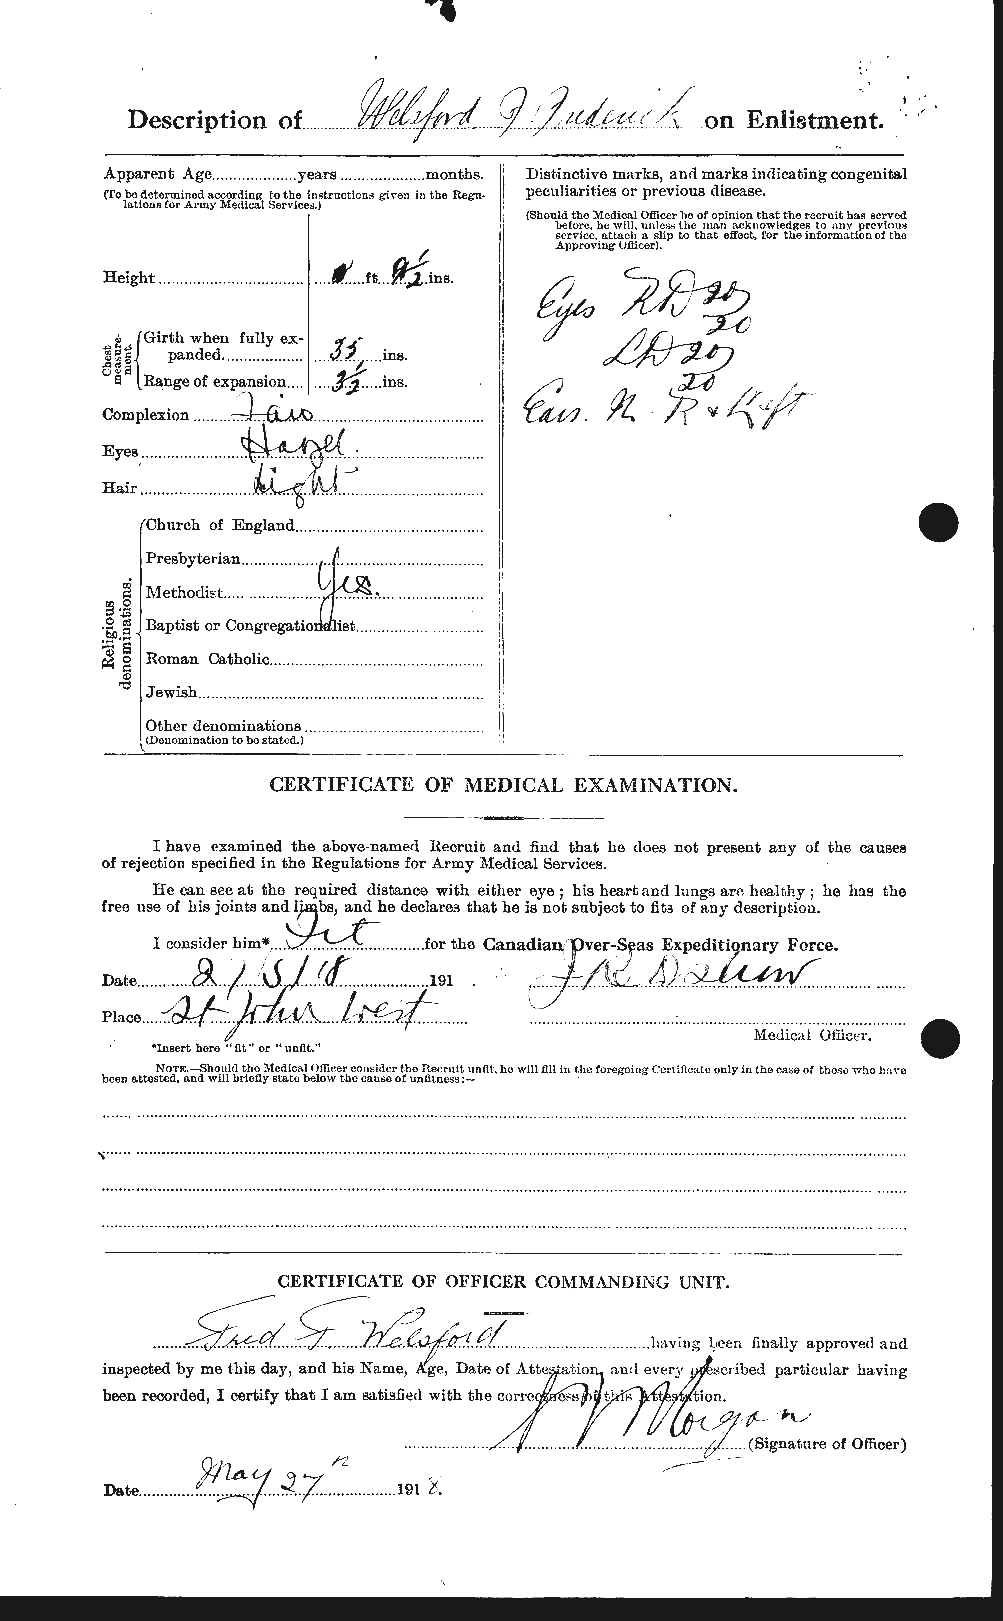 Dossiers du Personnel de la Première Guerre mondiale - CEC 665402b